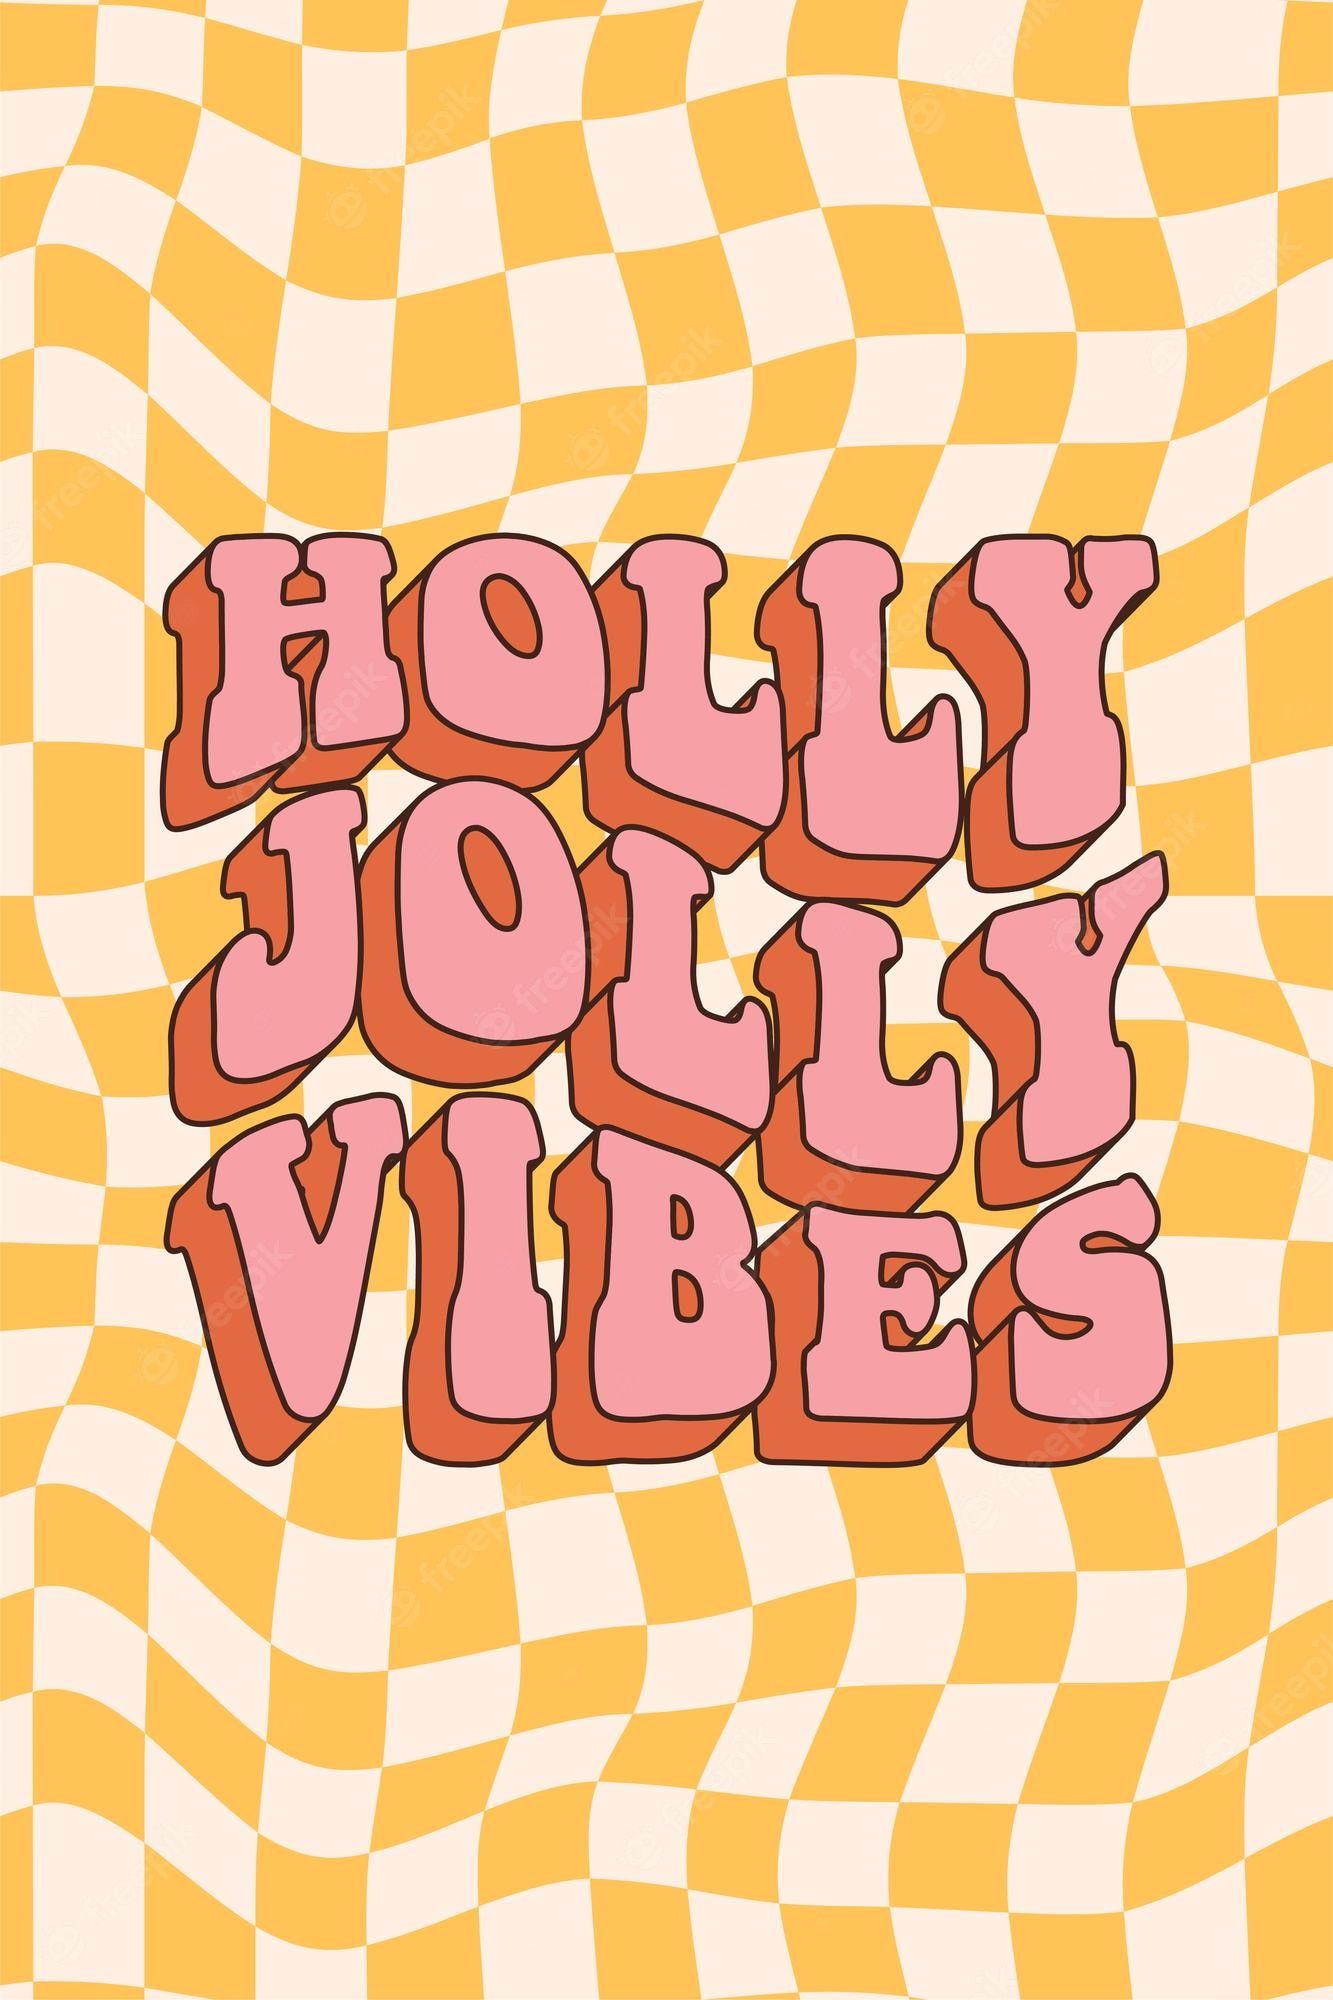  Fröhliche Hintergrundbild 1333x2000. Groovige Hippie Frohe Weihnachten Und Ein Gutes Neues Jahr Holly Jolly Vibes Im Trendigen Retro Cartoon Stil